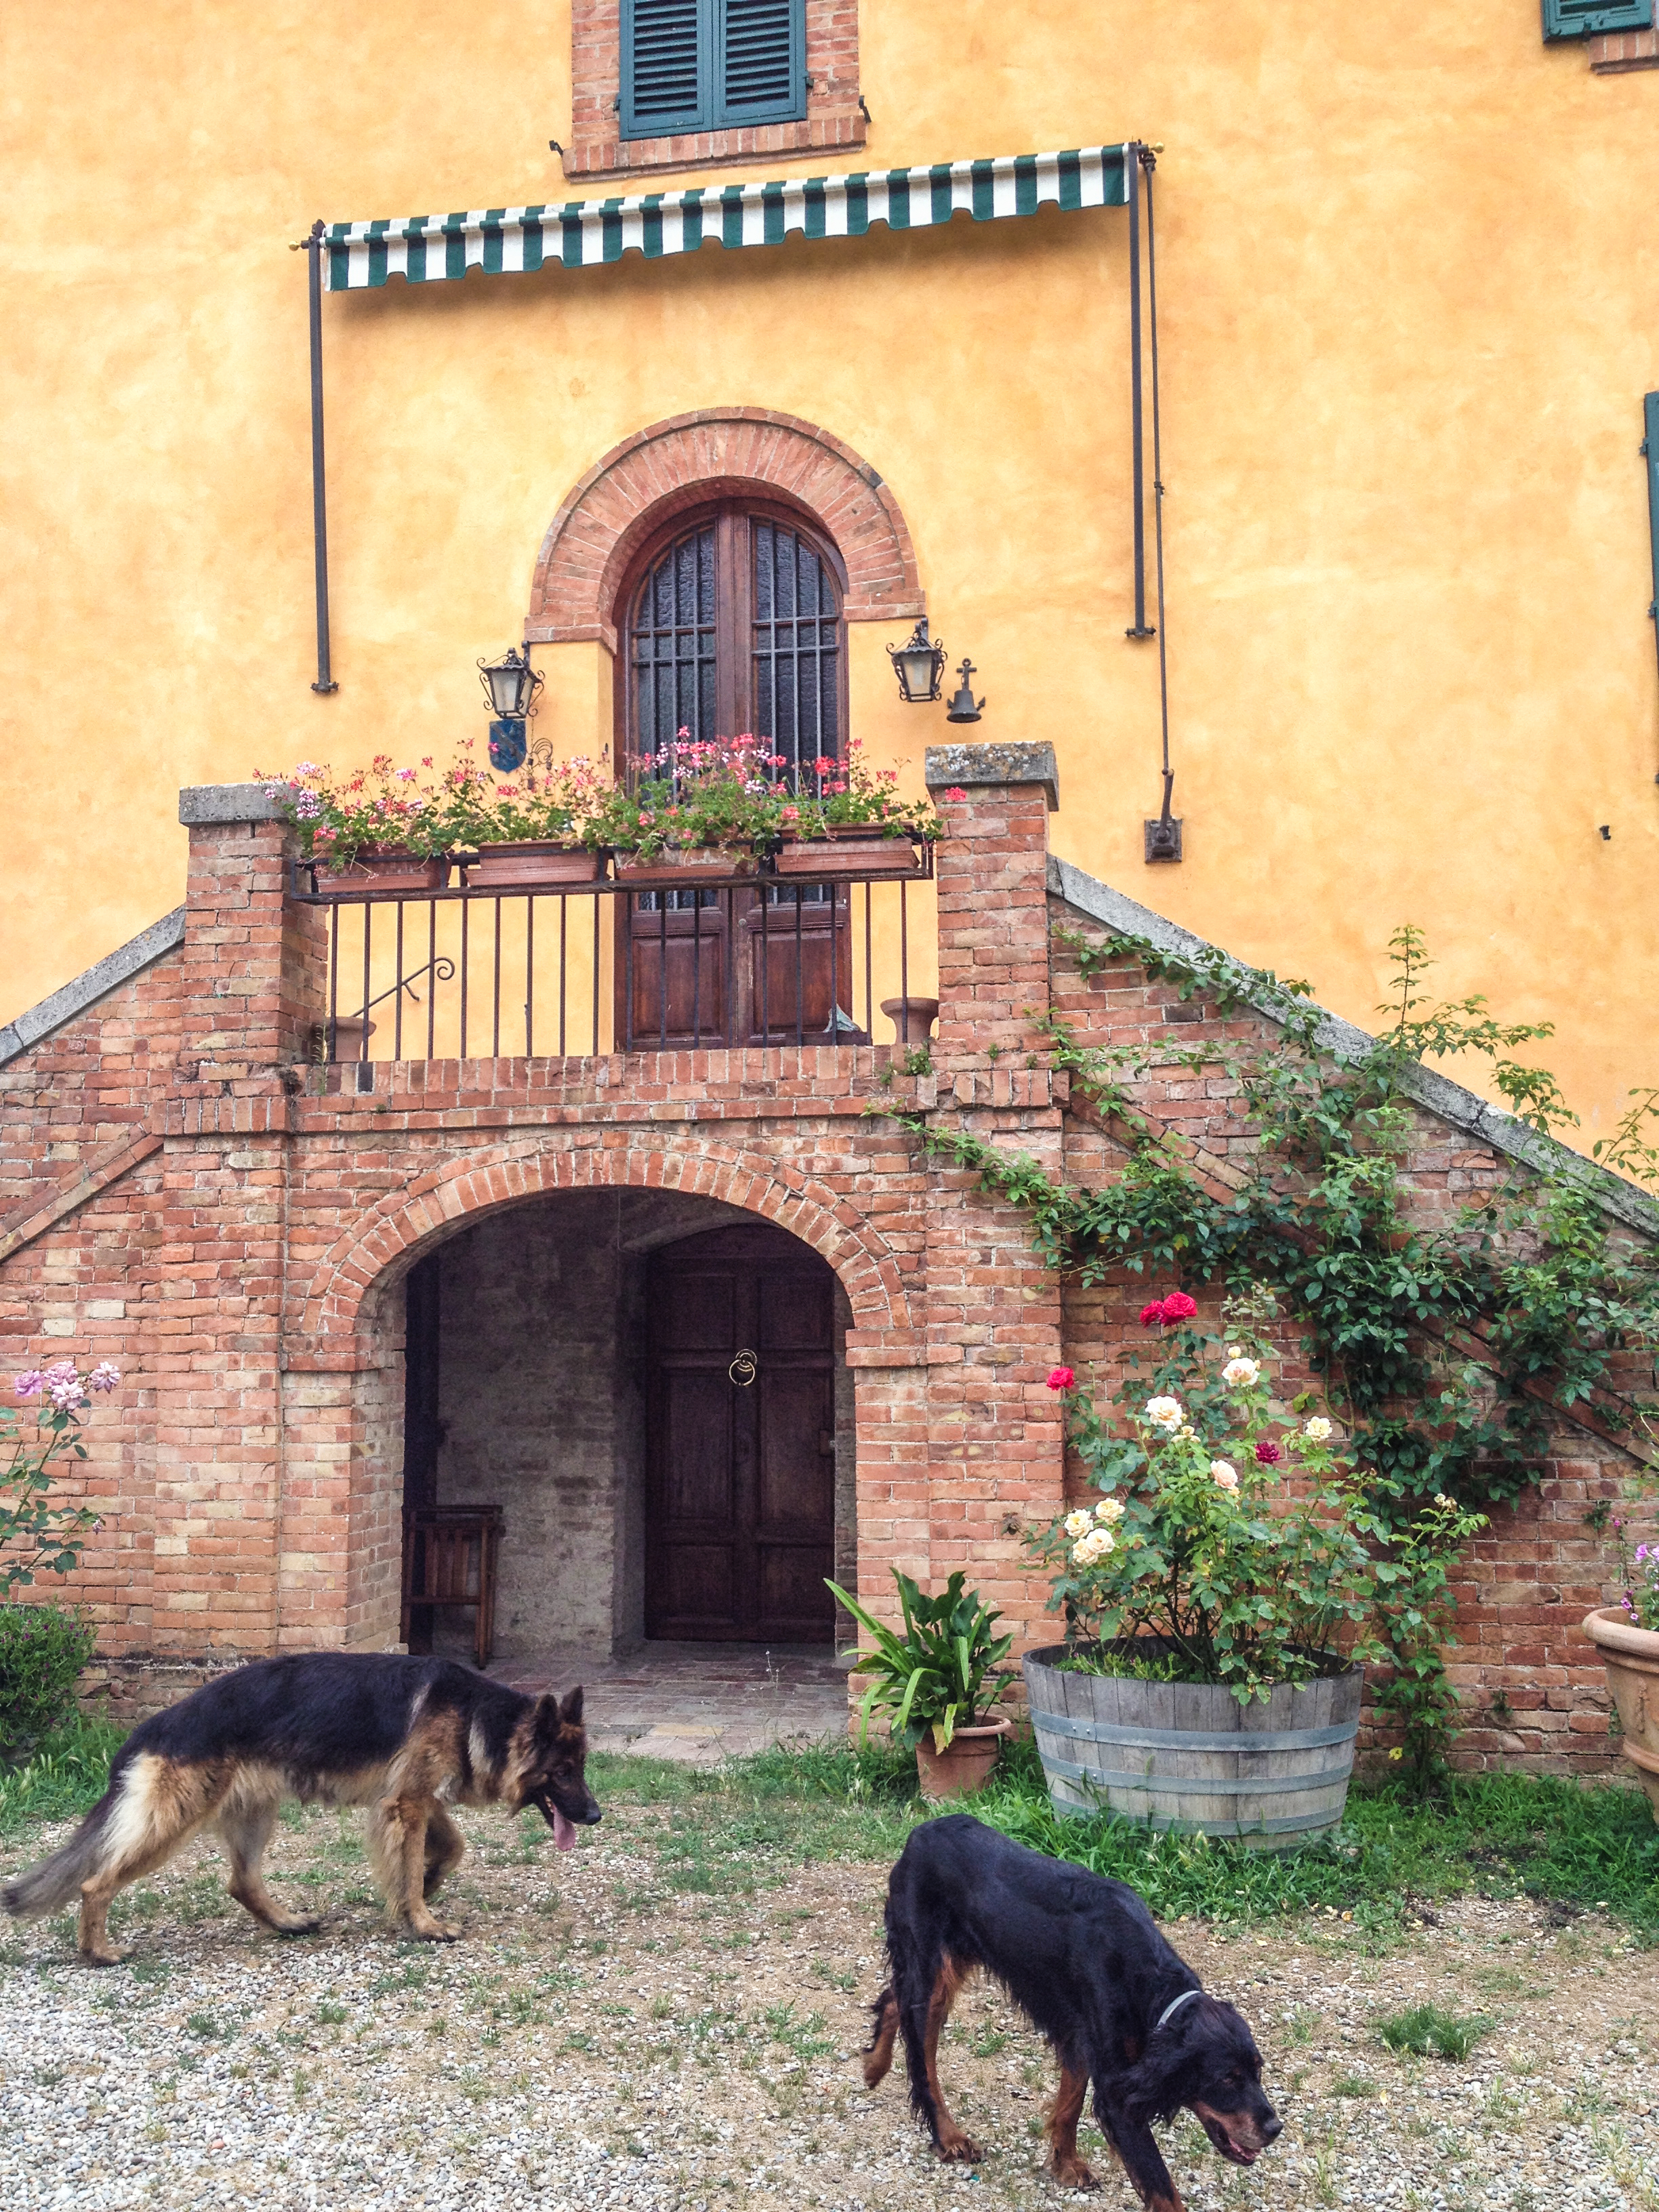 Entrance to the Petroio Villa.